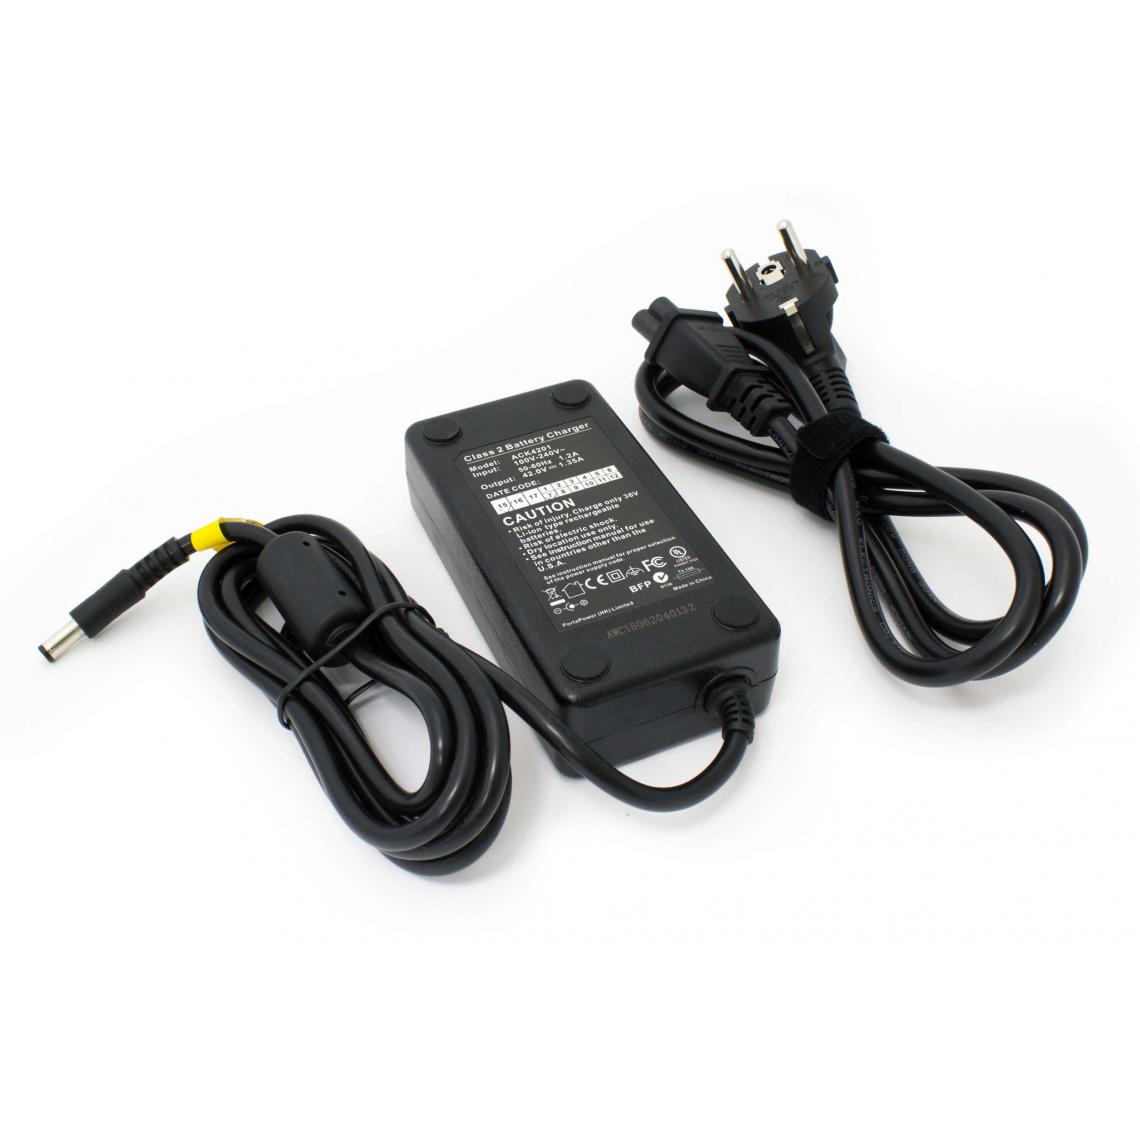 Vhbw - vhbw chargeur remplacement pour HP1202L3 pour vélos électriques, E-bike - Pour batteries Li-ion de 36 V, avec connexion par prise ronde - Accessoires Mobilité électrique